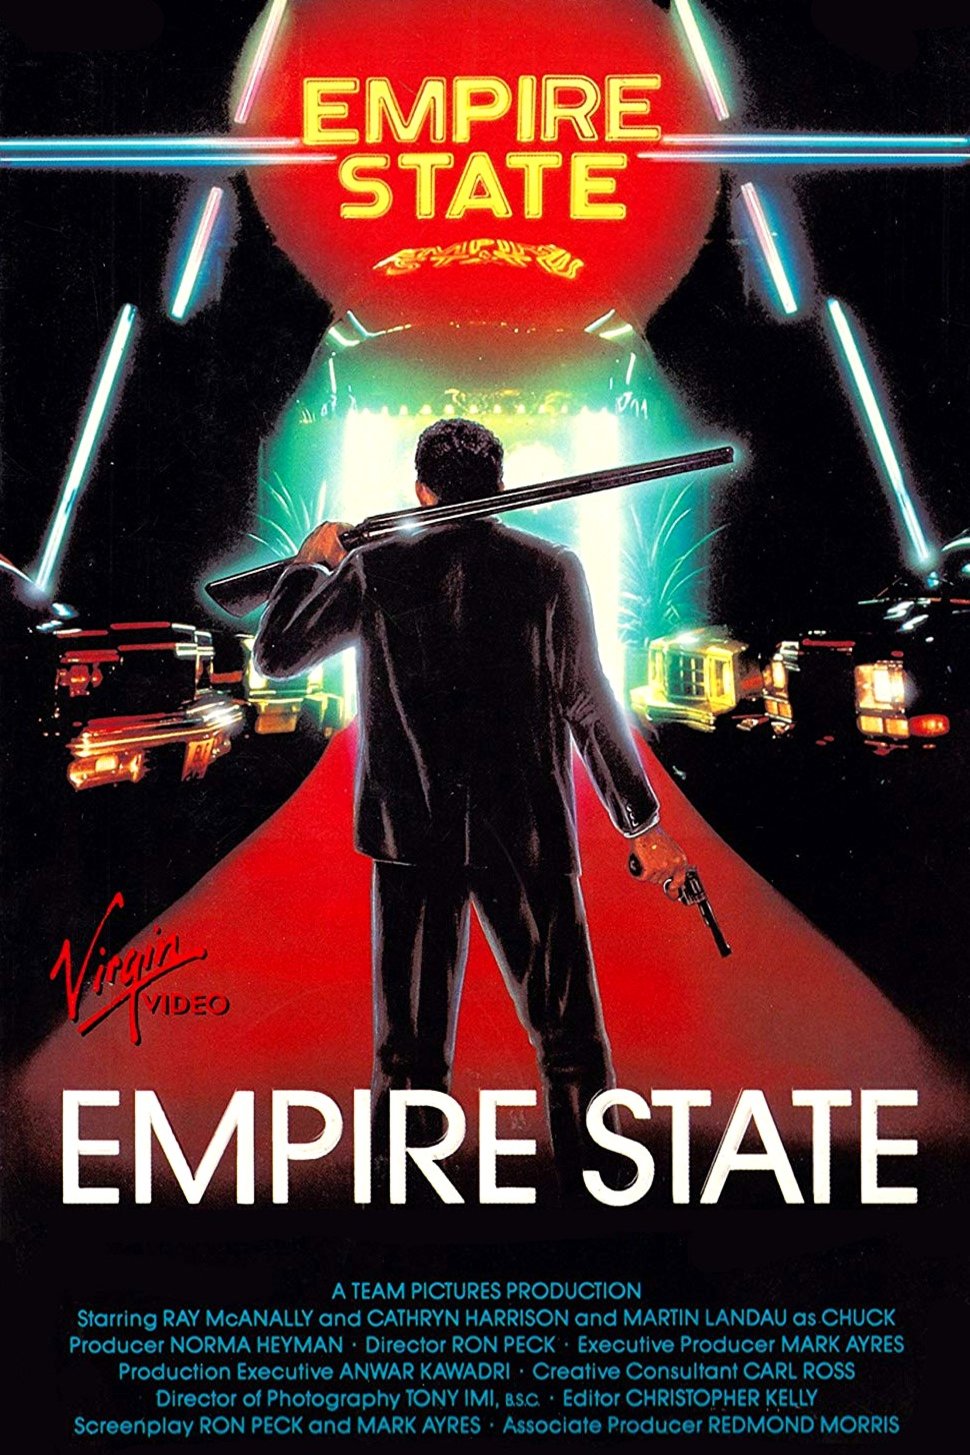 L'affiche du film Empire State